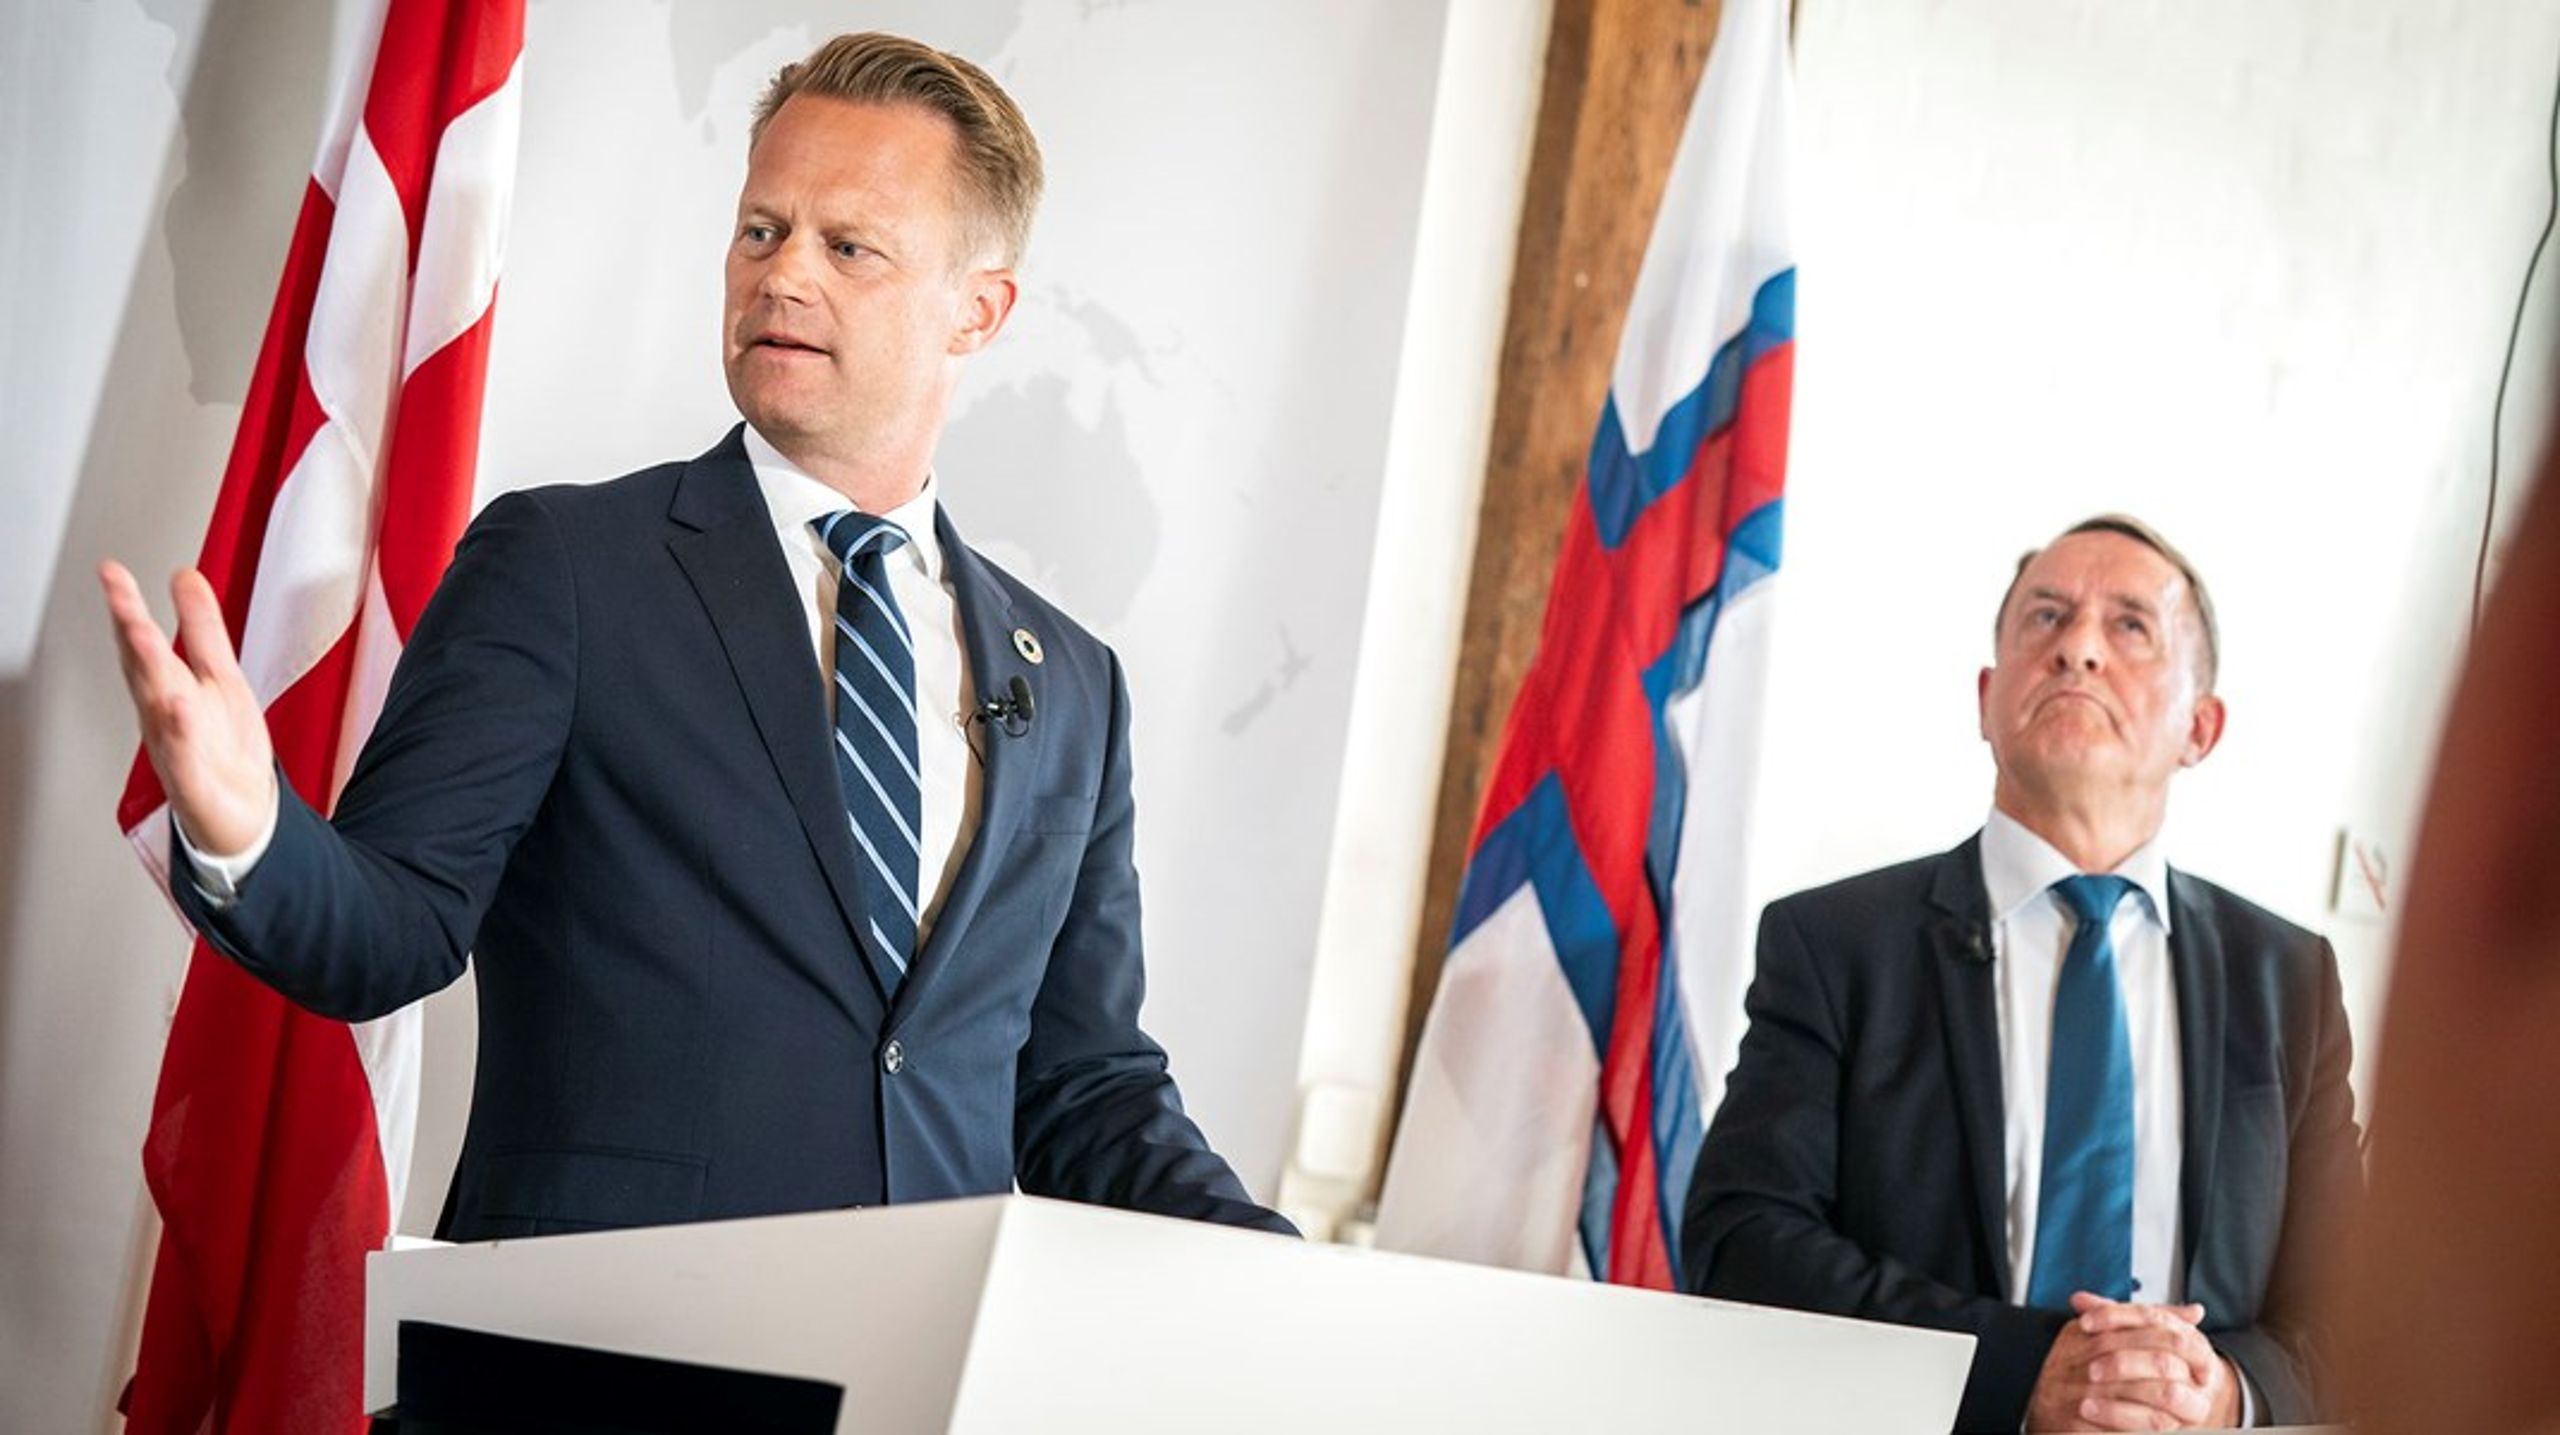 Danmarks udenrigsminister Jeppe Kofod (t.v.) og det færøske landsstyres udenrigsansvarlige Jenis av Rana ved et pressemøde før den daværende amerikanske udenrigsminister Mike Pompeos besøg i juli 2020.&nbsp;